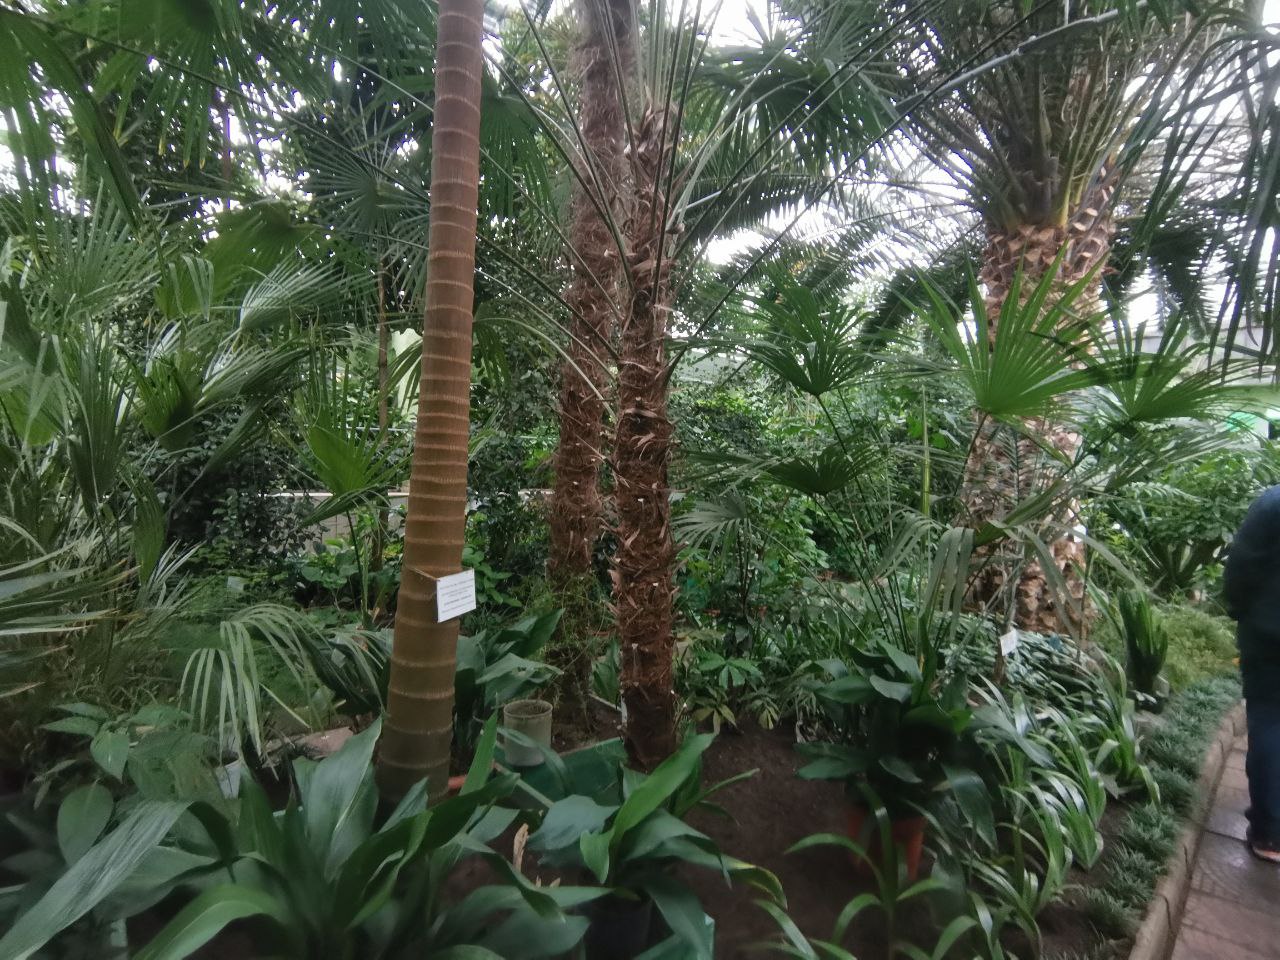 В оранжерее ботанического сада растут самые северные в мире фикусы, агавы, кактусы, цикасы и многие другие тропические растения